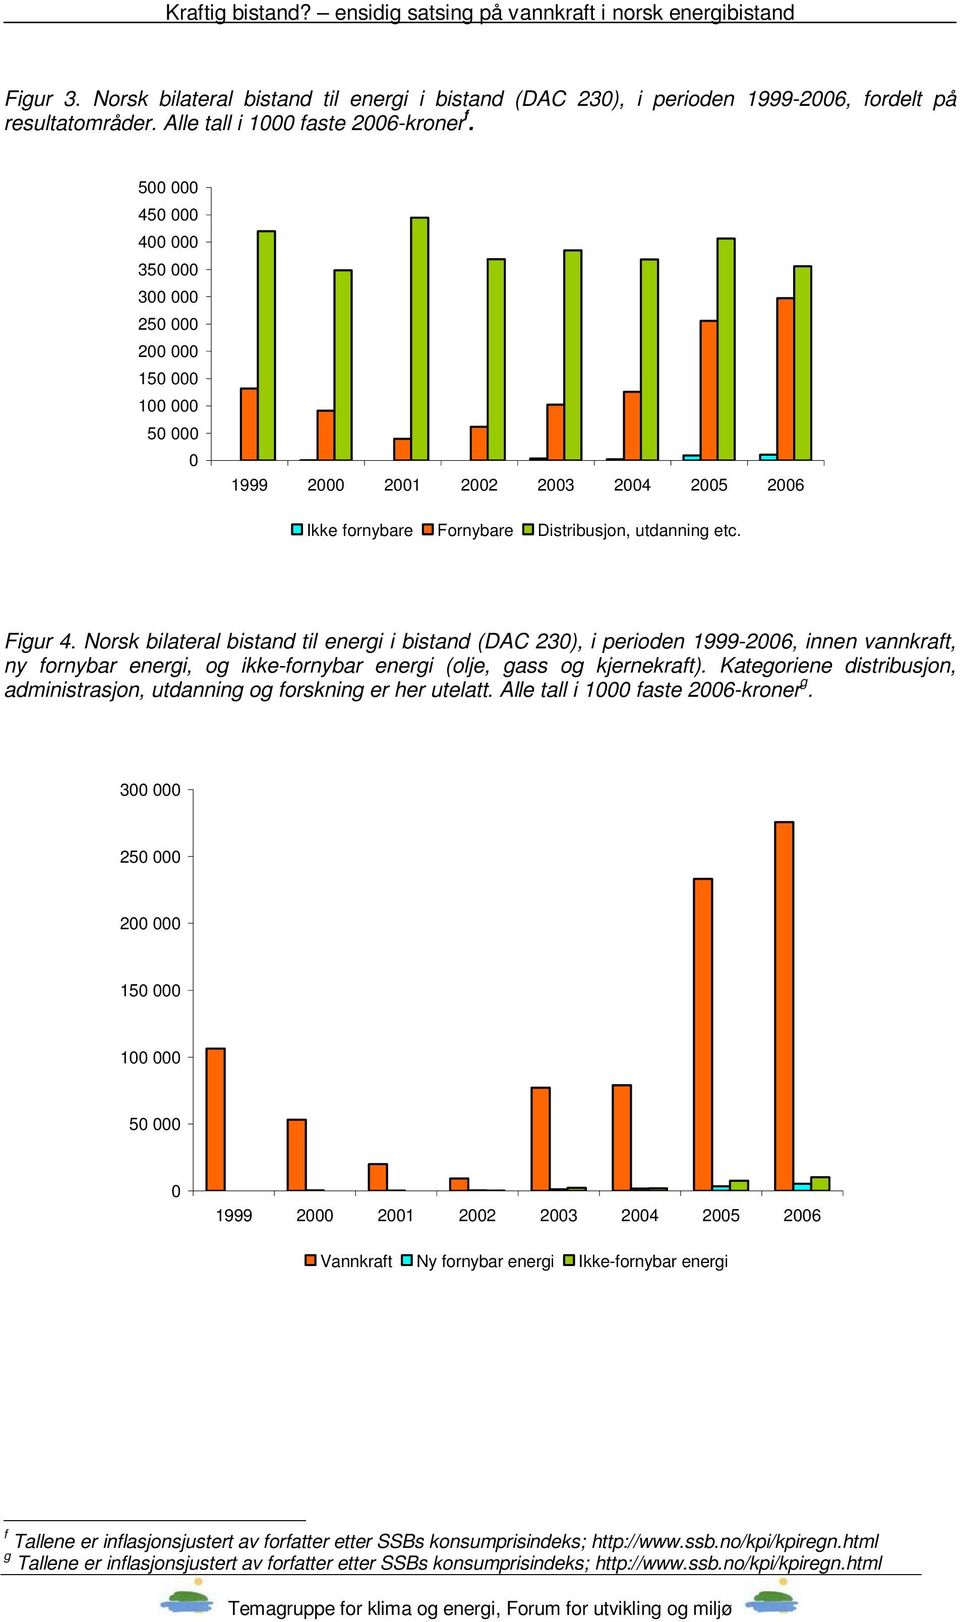 Norsk bilateral bistand til energi i bistand (DAC 230), i perioden 1999-2006, innen vannkraft, ny fornybar energi, og ikke-fornybar energi (olje, gass og kjernekraft).